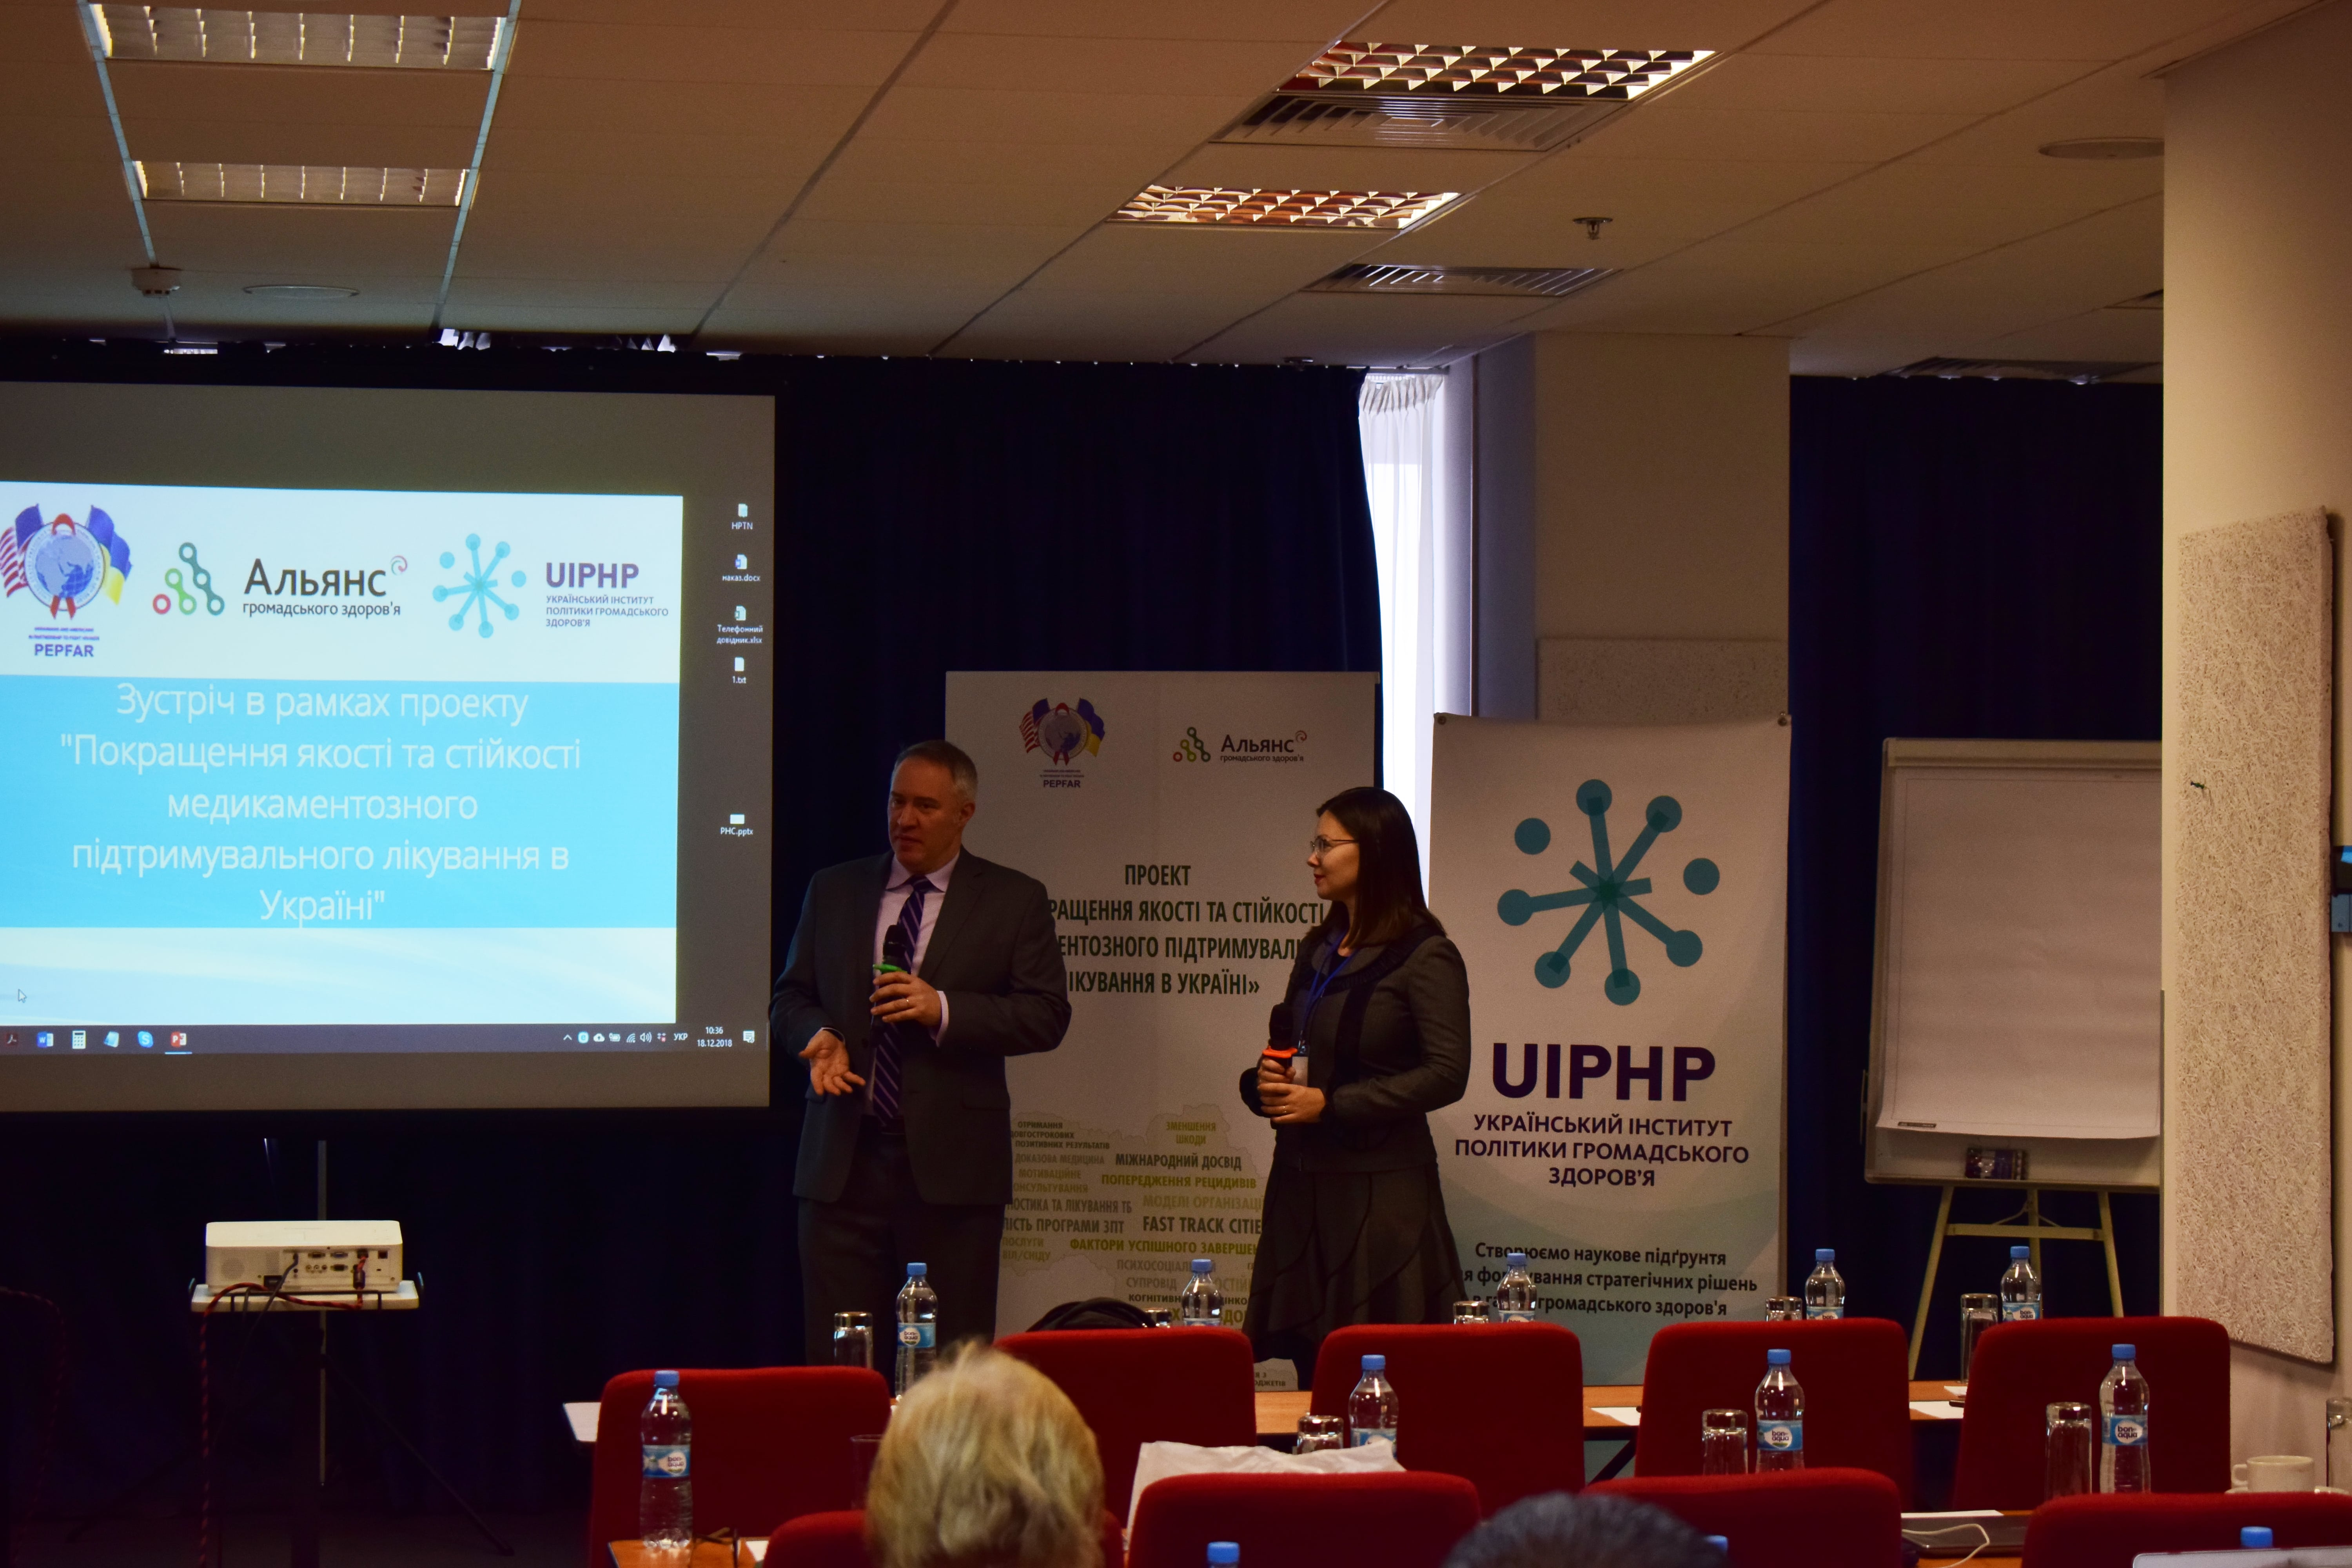 Робоча зустріч в рамках проекту «Покращення якості та стійкості медикаментозного підтримувального лікування в Україні»